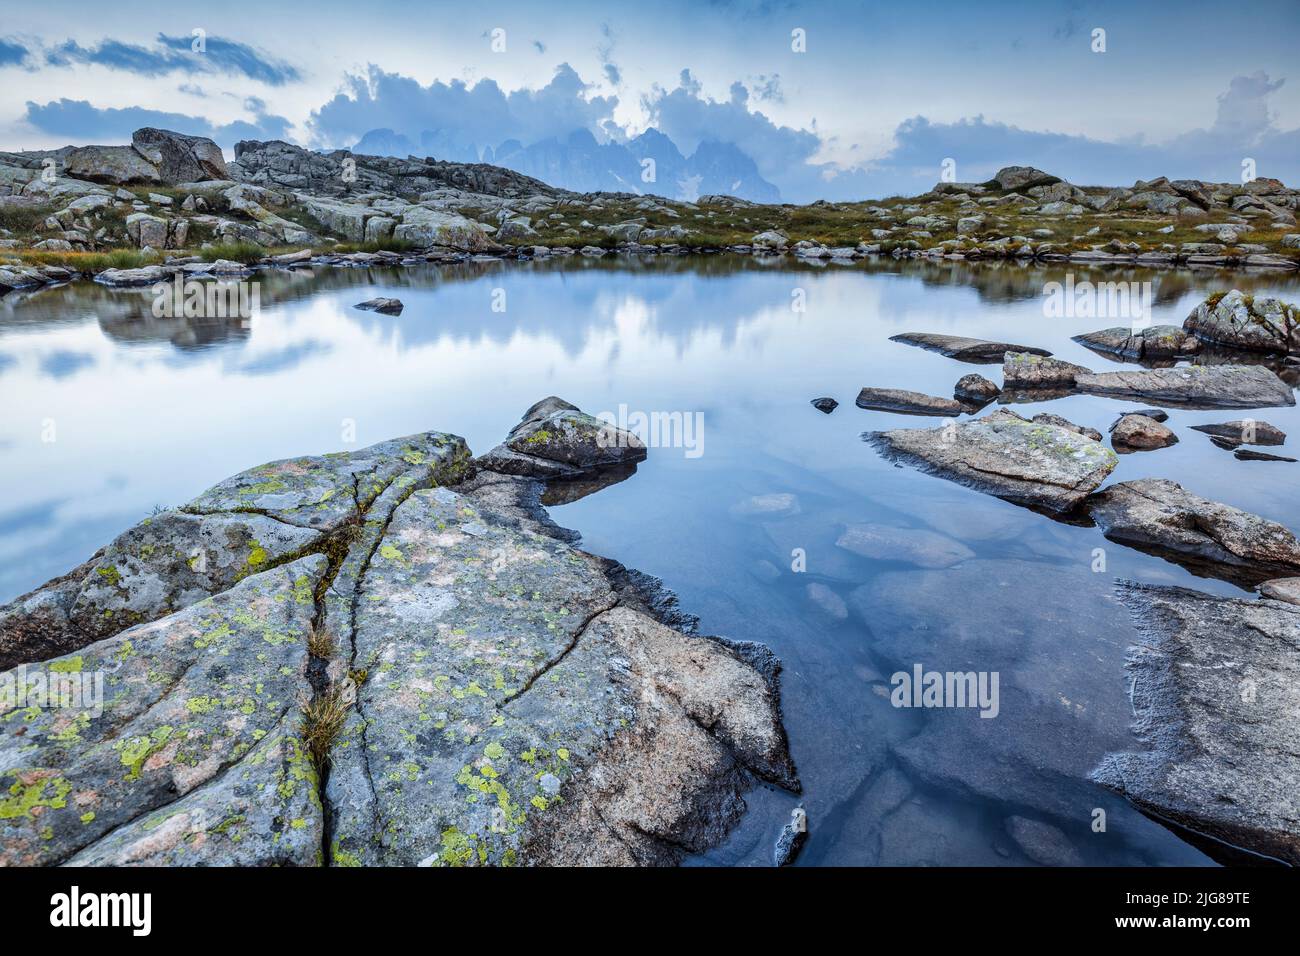 Italia, Trentino, provincia di Trento, piccola area umida alpina, laghetto, laghi di Juribrutto Foto Stock